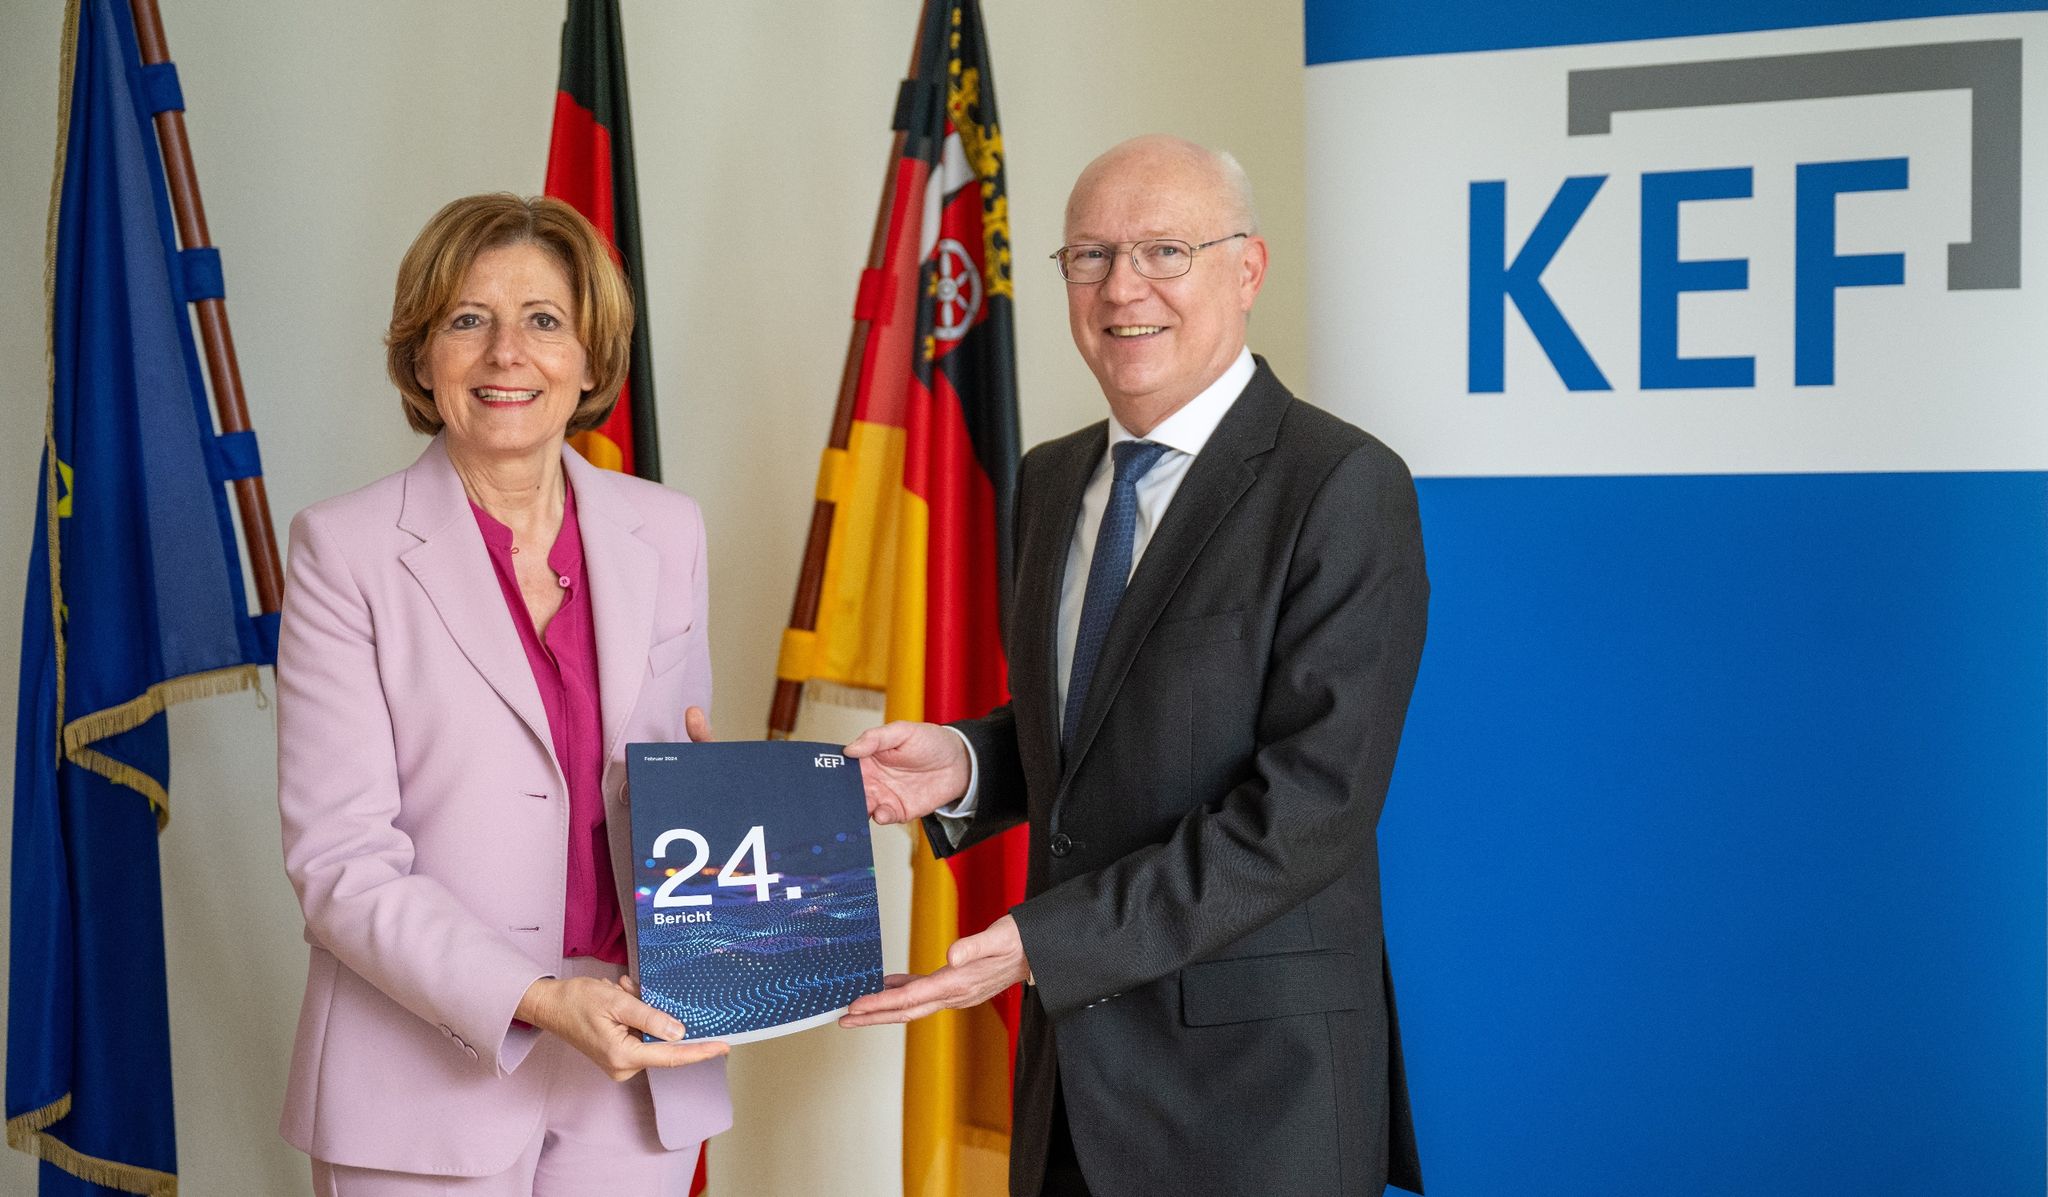 Der KEF-Vorsitzende Martin Detzel übergibt den 24. KEF-Bericht an Ministerpräsidentin Malu Dreyer.